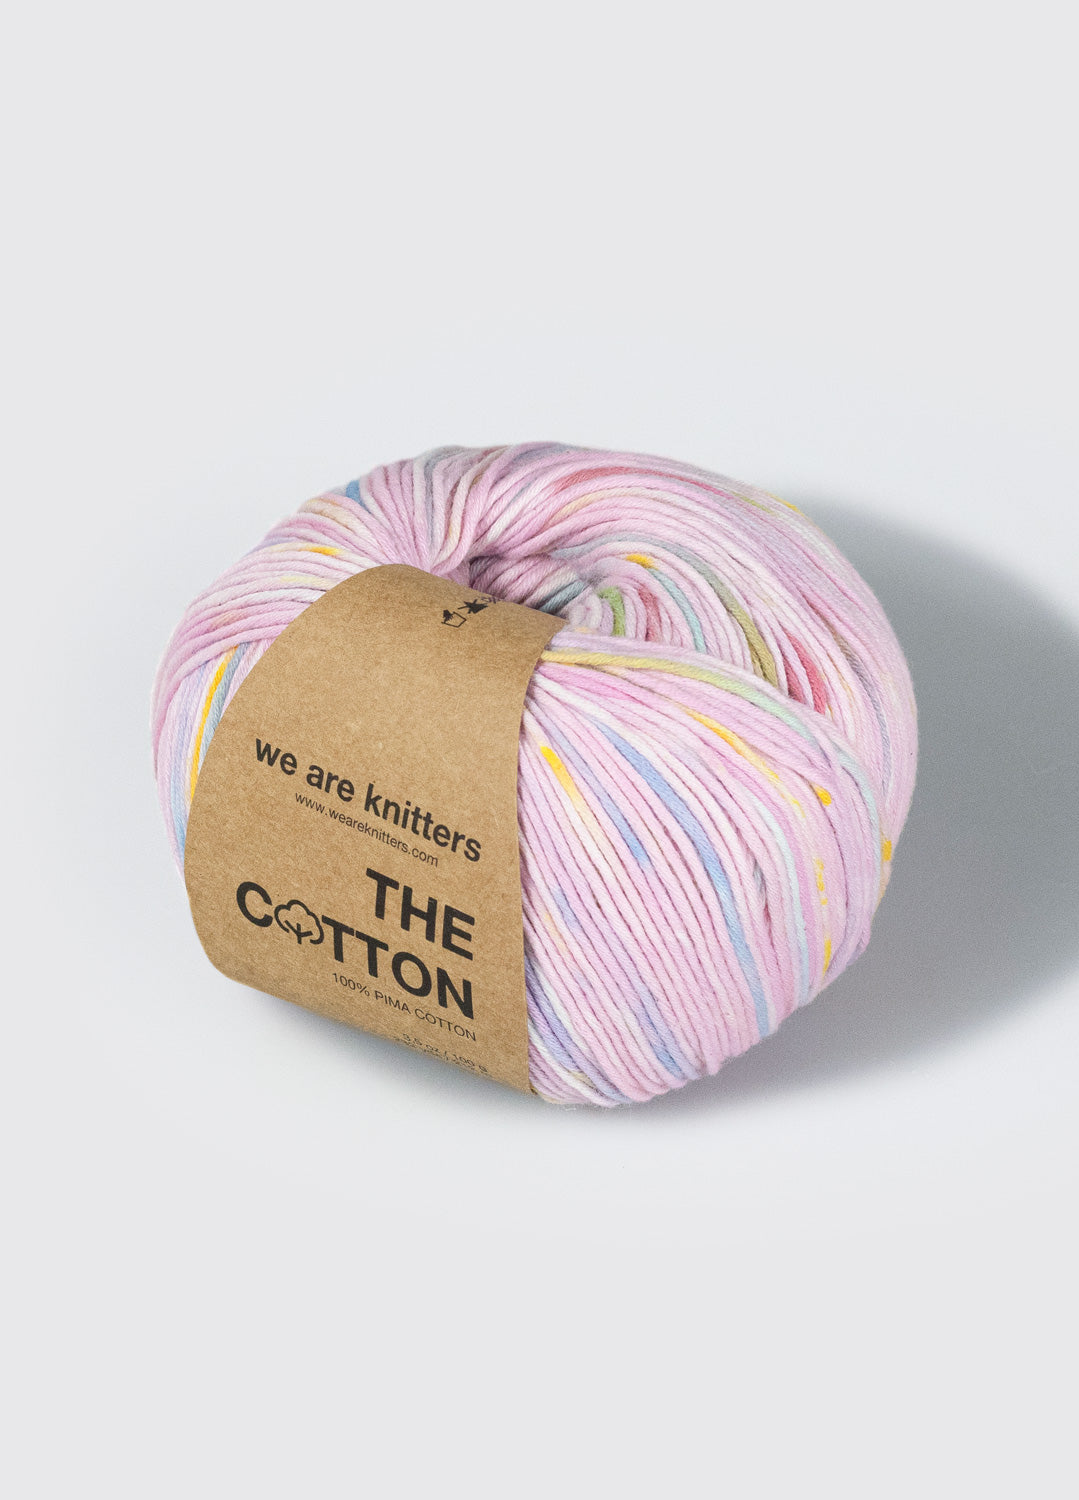 The Mixed Yarn Forest Green – weareknitters